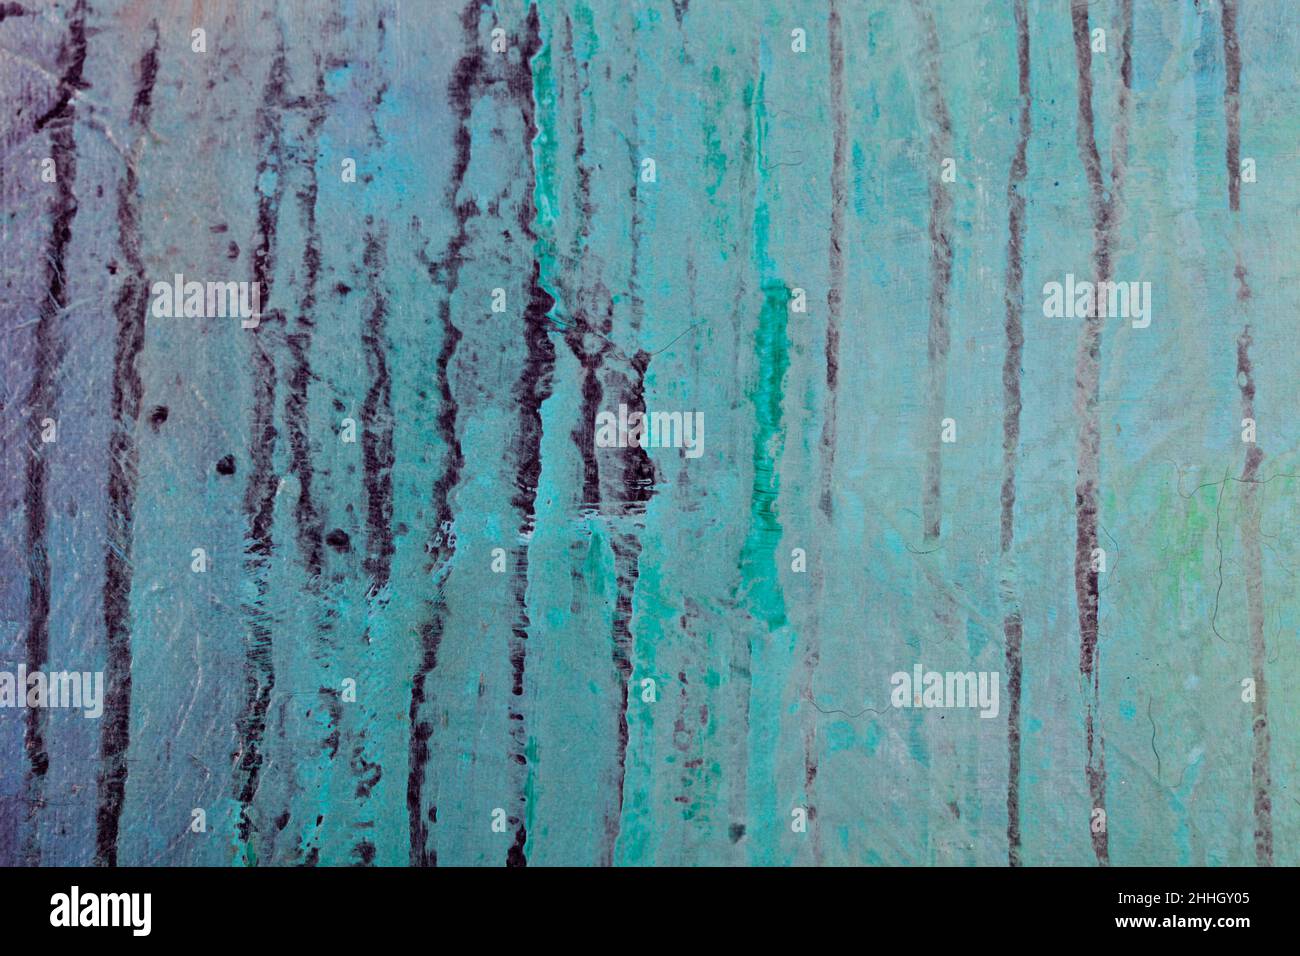 Textur der Betonwand. Blaue, grüne und schwarze Farben. Hintergründe Texturen. Stockfoto